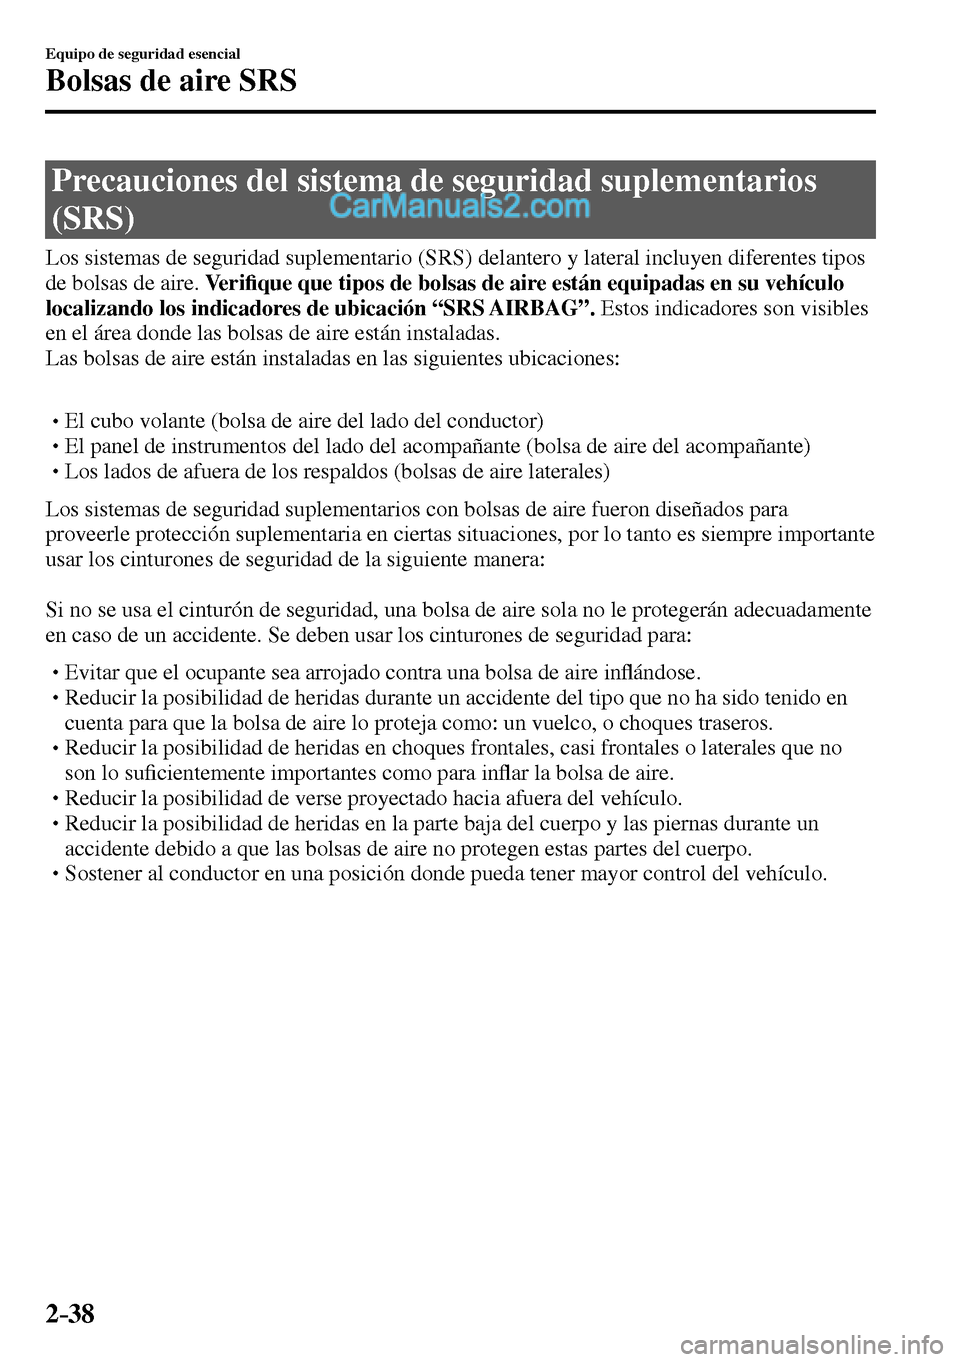 MAZDA MODEL MX-5 RF 2017  Manual del propietario (in Spanish) 2–38
Equipo de seguridad esencial
Bolsas de aire SRS
              Precauciones  del  sistema  de  seguridad  suplementarios 
(SRS)
    Los sistemas de seguridad suplementario (SRS) delantero y late